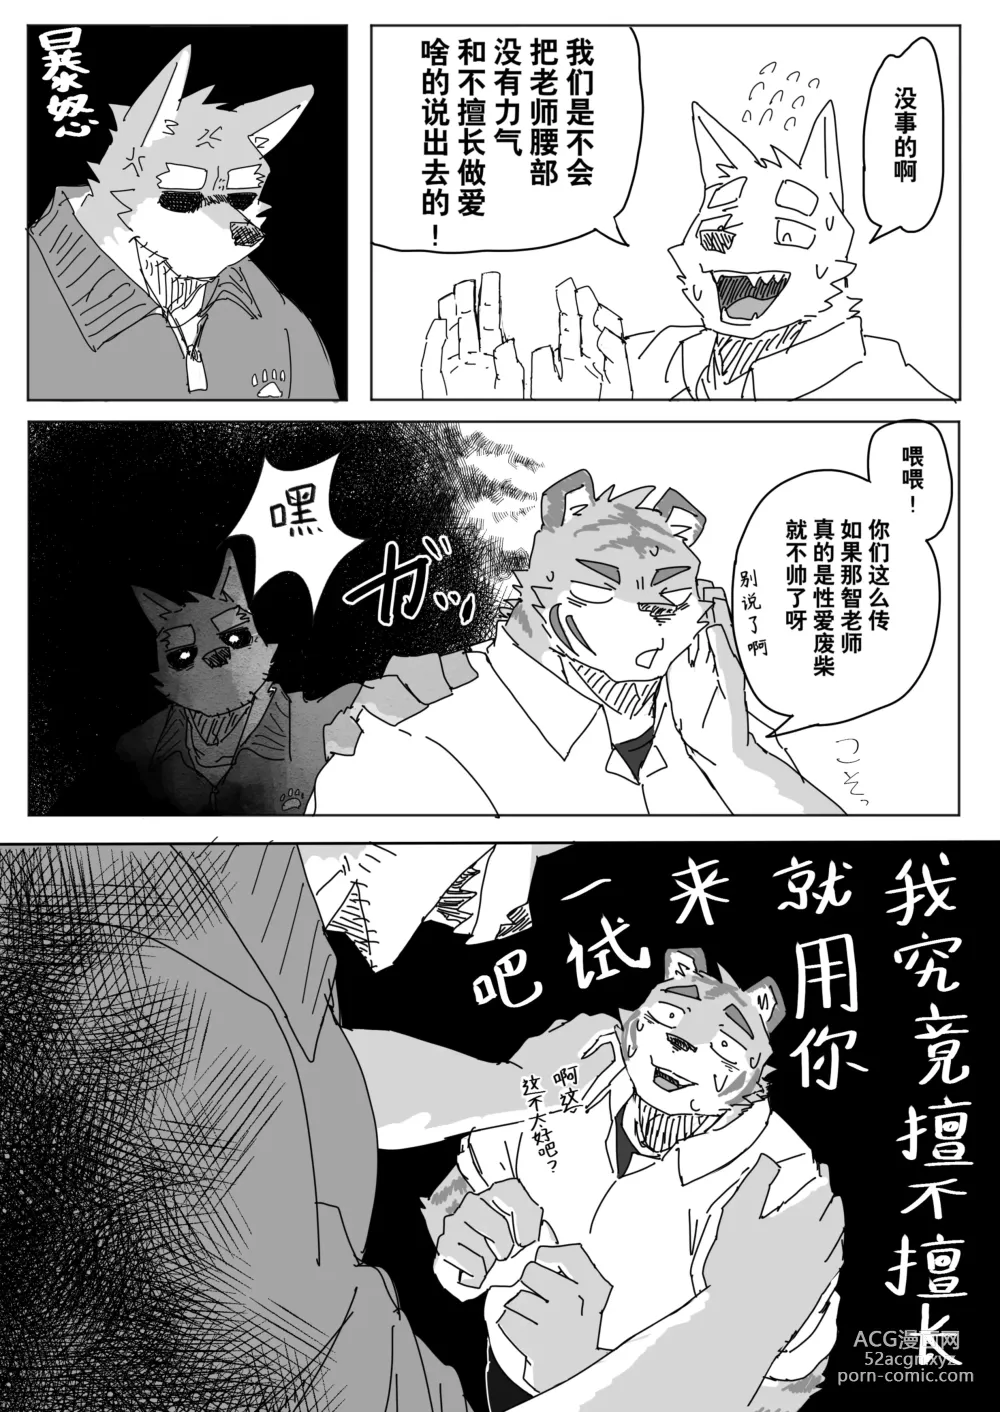 Page 9 of manga 放学后的游戏+后续